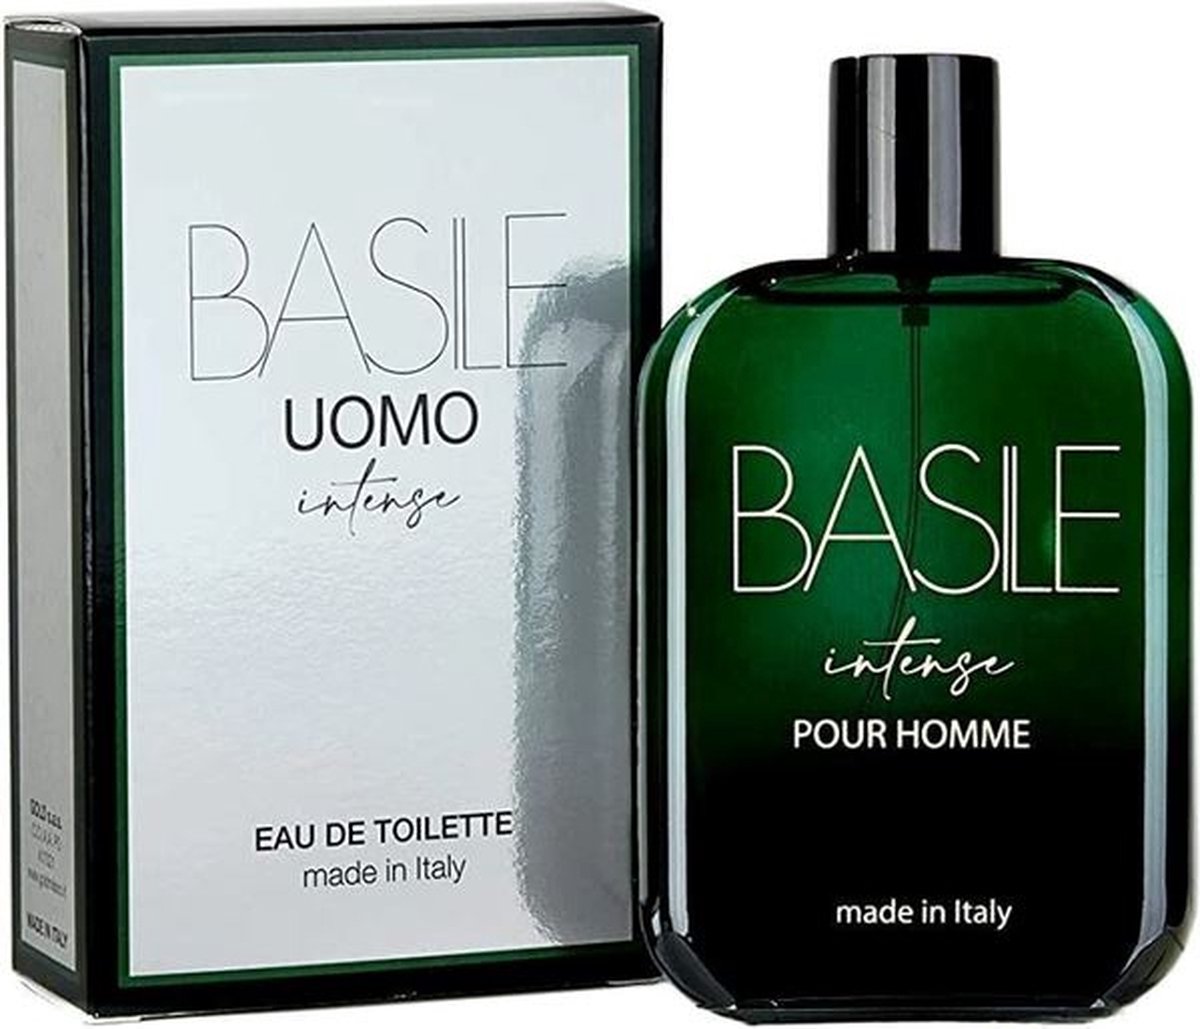 Basile Intense Uomo Parfum EDT 100ml